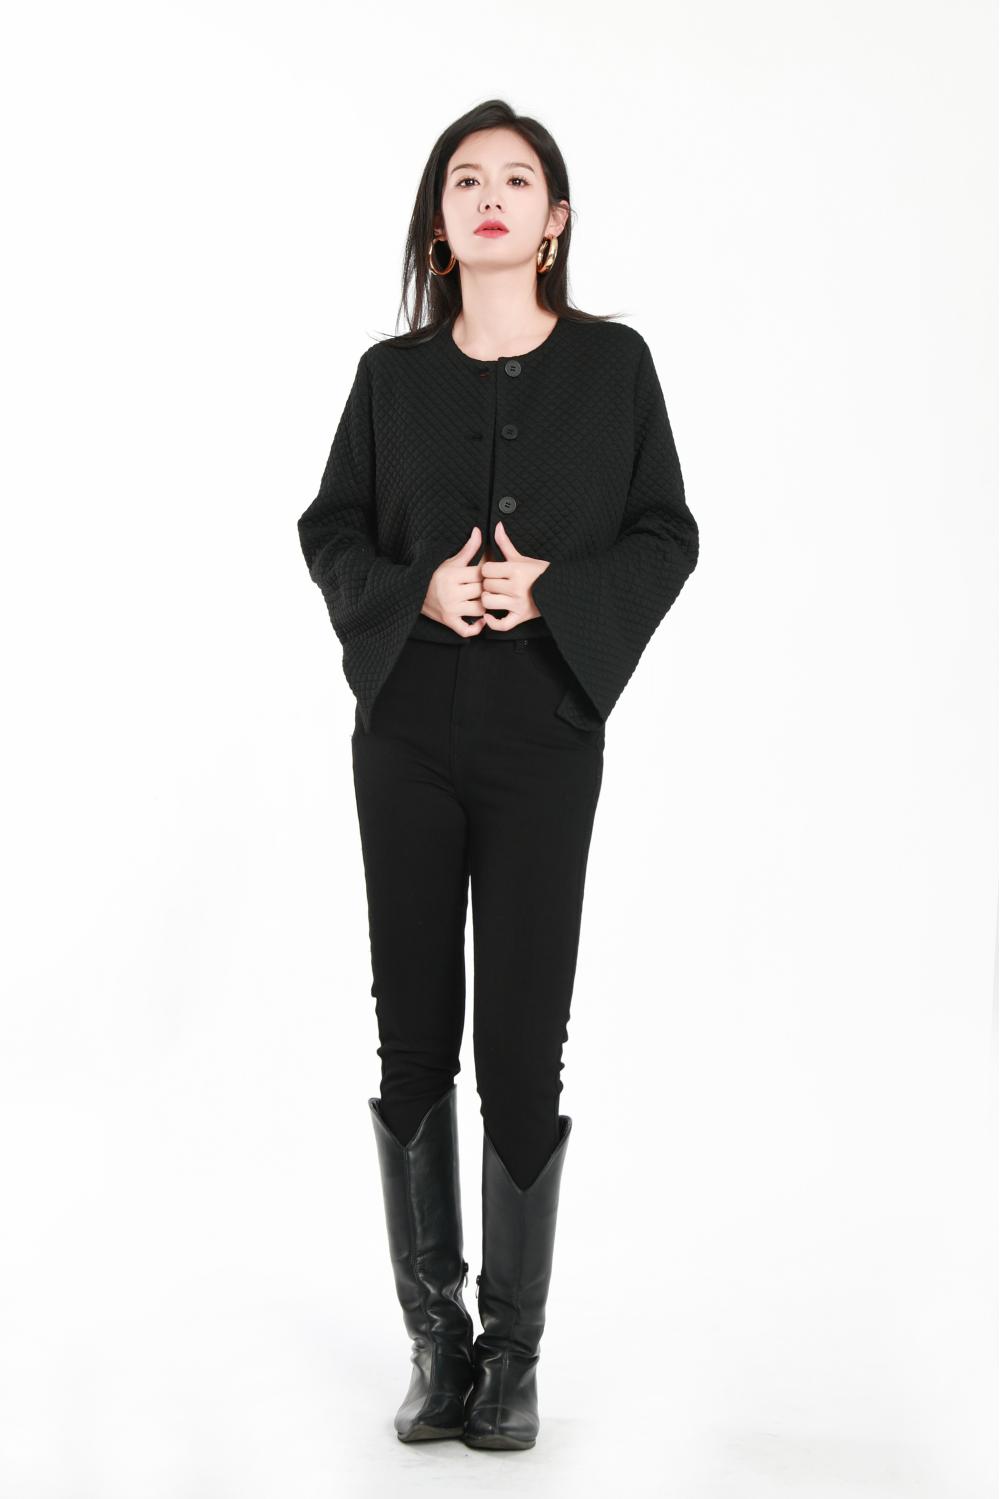 Áo khoác dệt màu đen của phụ nữ